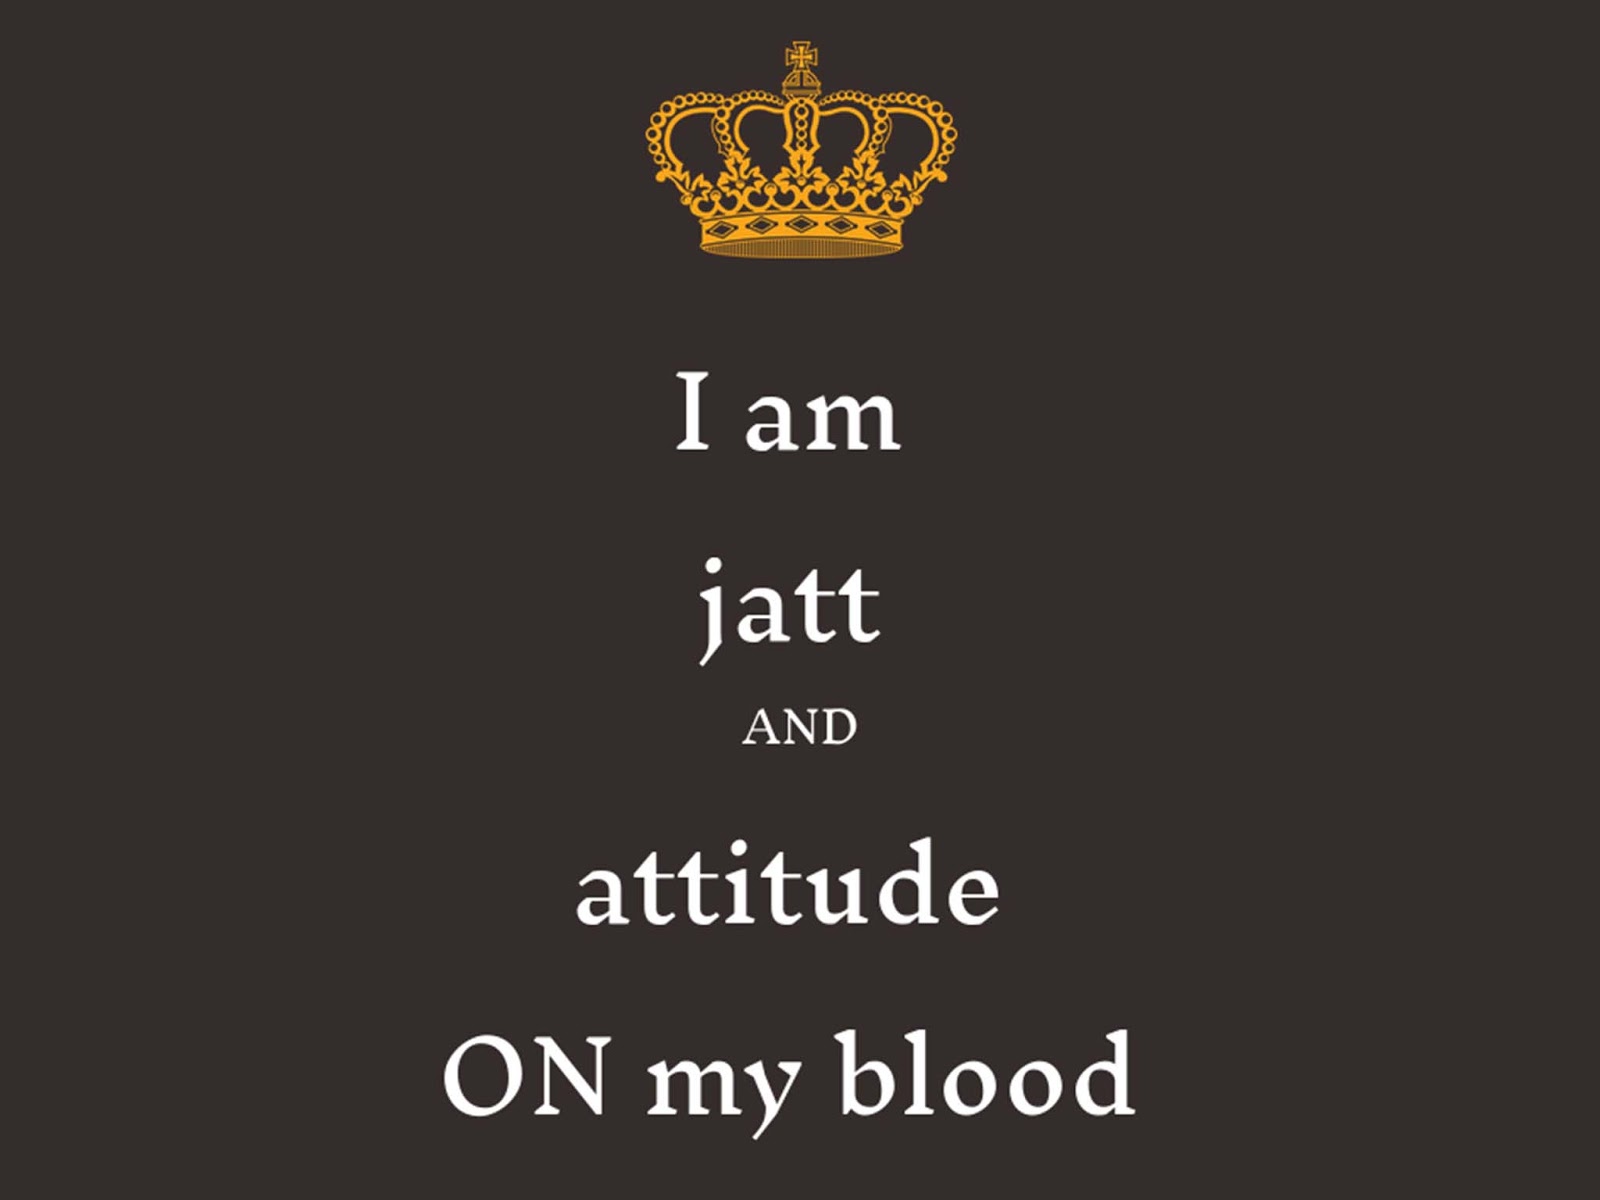 Whatsapp Dp Attitude Jatt - Jatt Attitude Whatsapp Dp - HD Wallpaper 